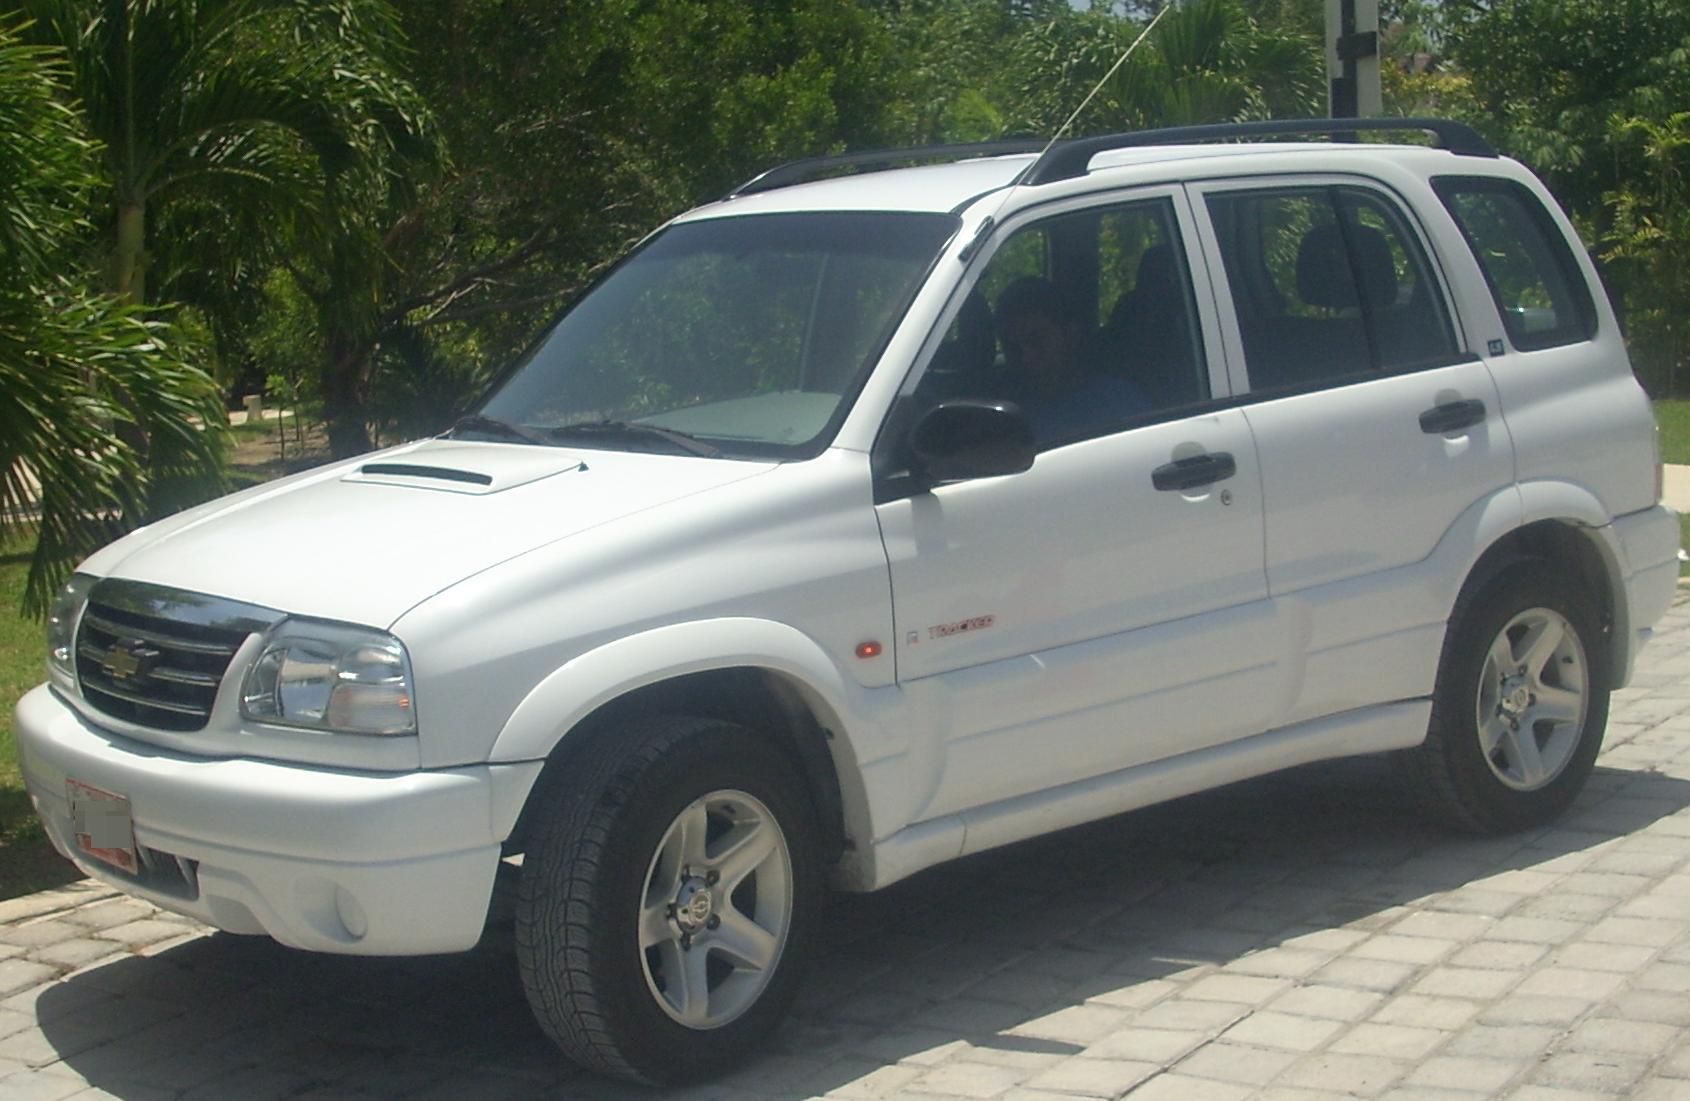 Última generación de Chevrolet Tracker en México (2006)